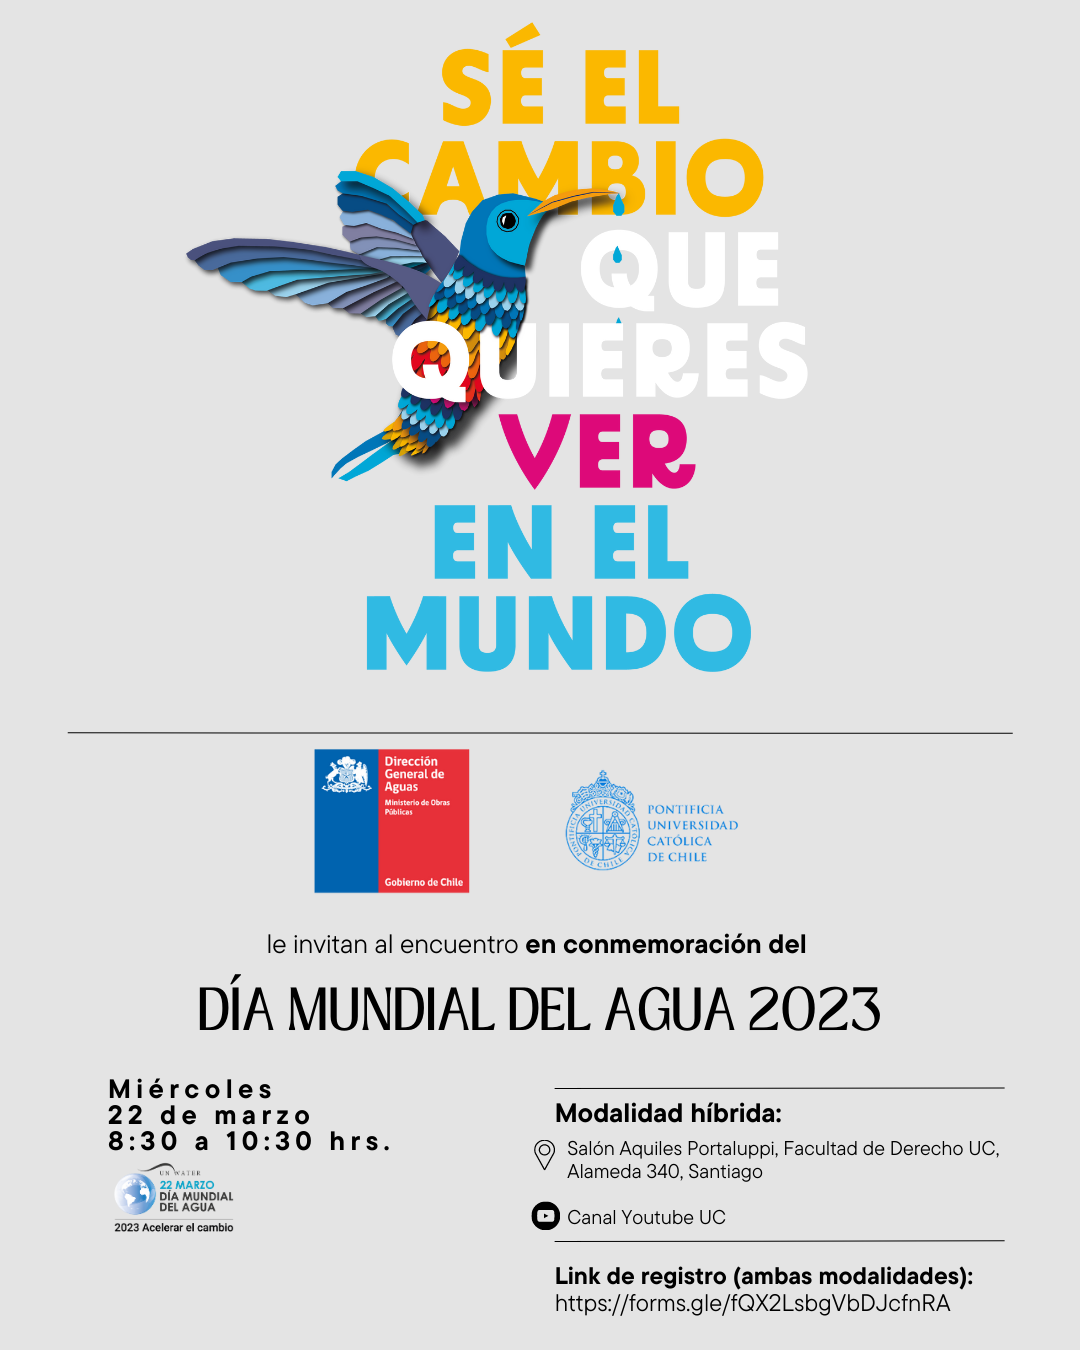 Encuentro en conmemoración del Día Mundial del Agua 2023